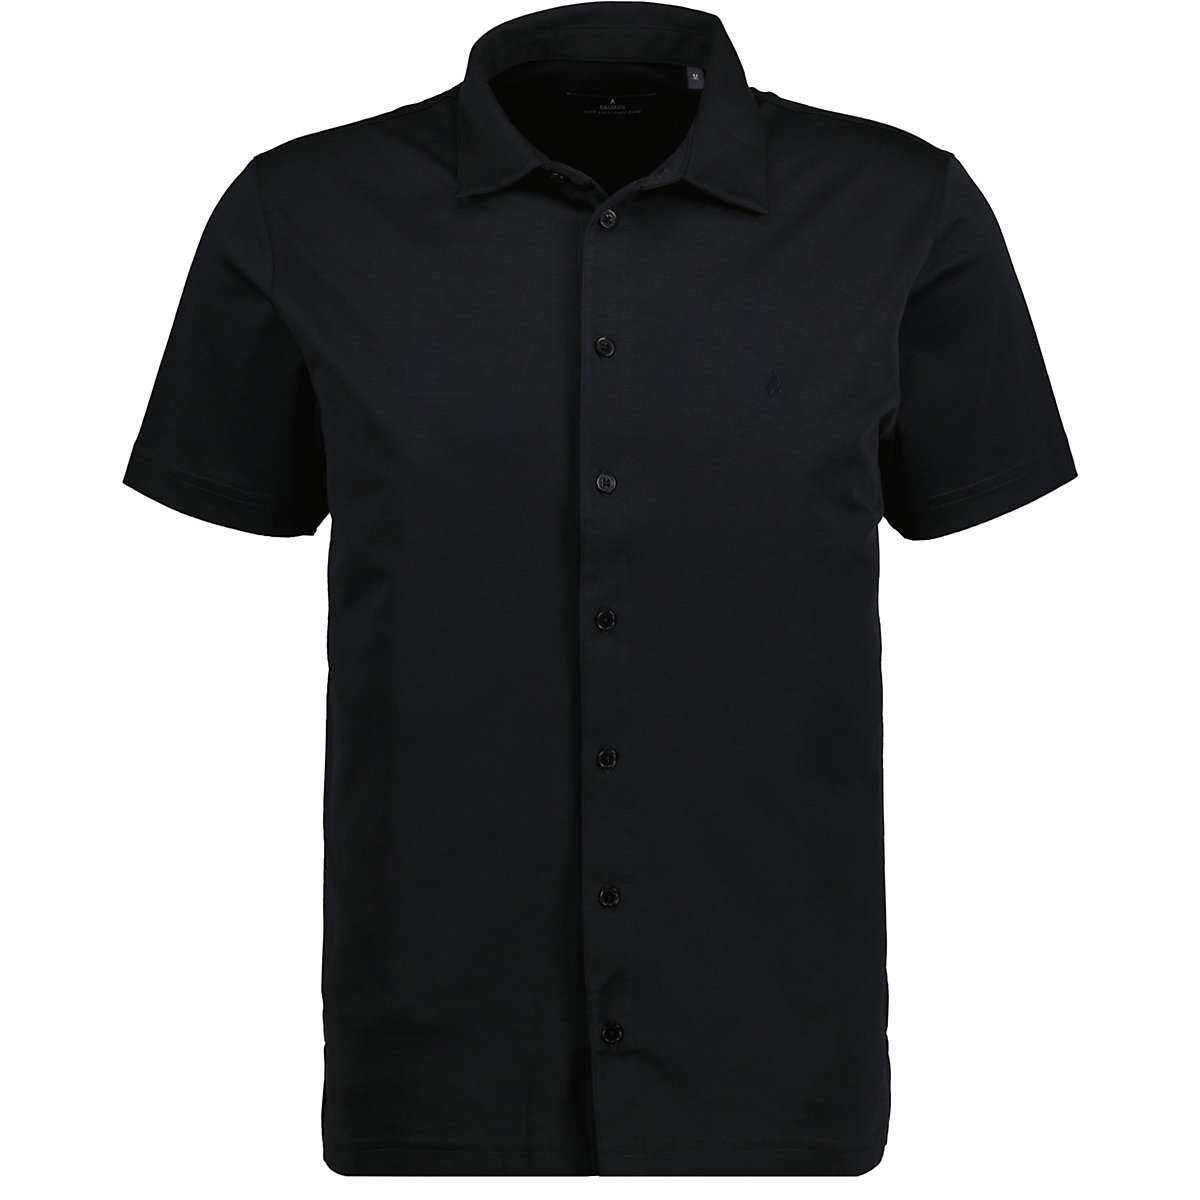 RAGMAN Softknit-Hemd kurzarm Poloshirts schwarz/blau